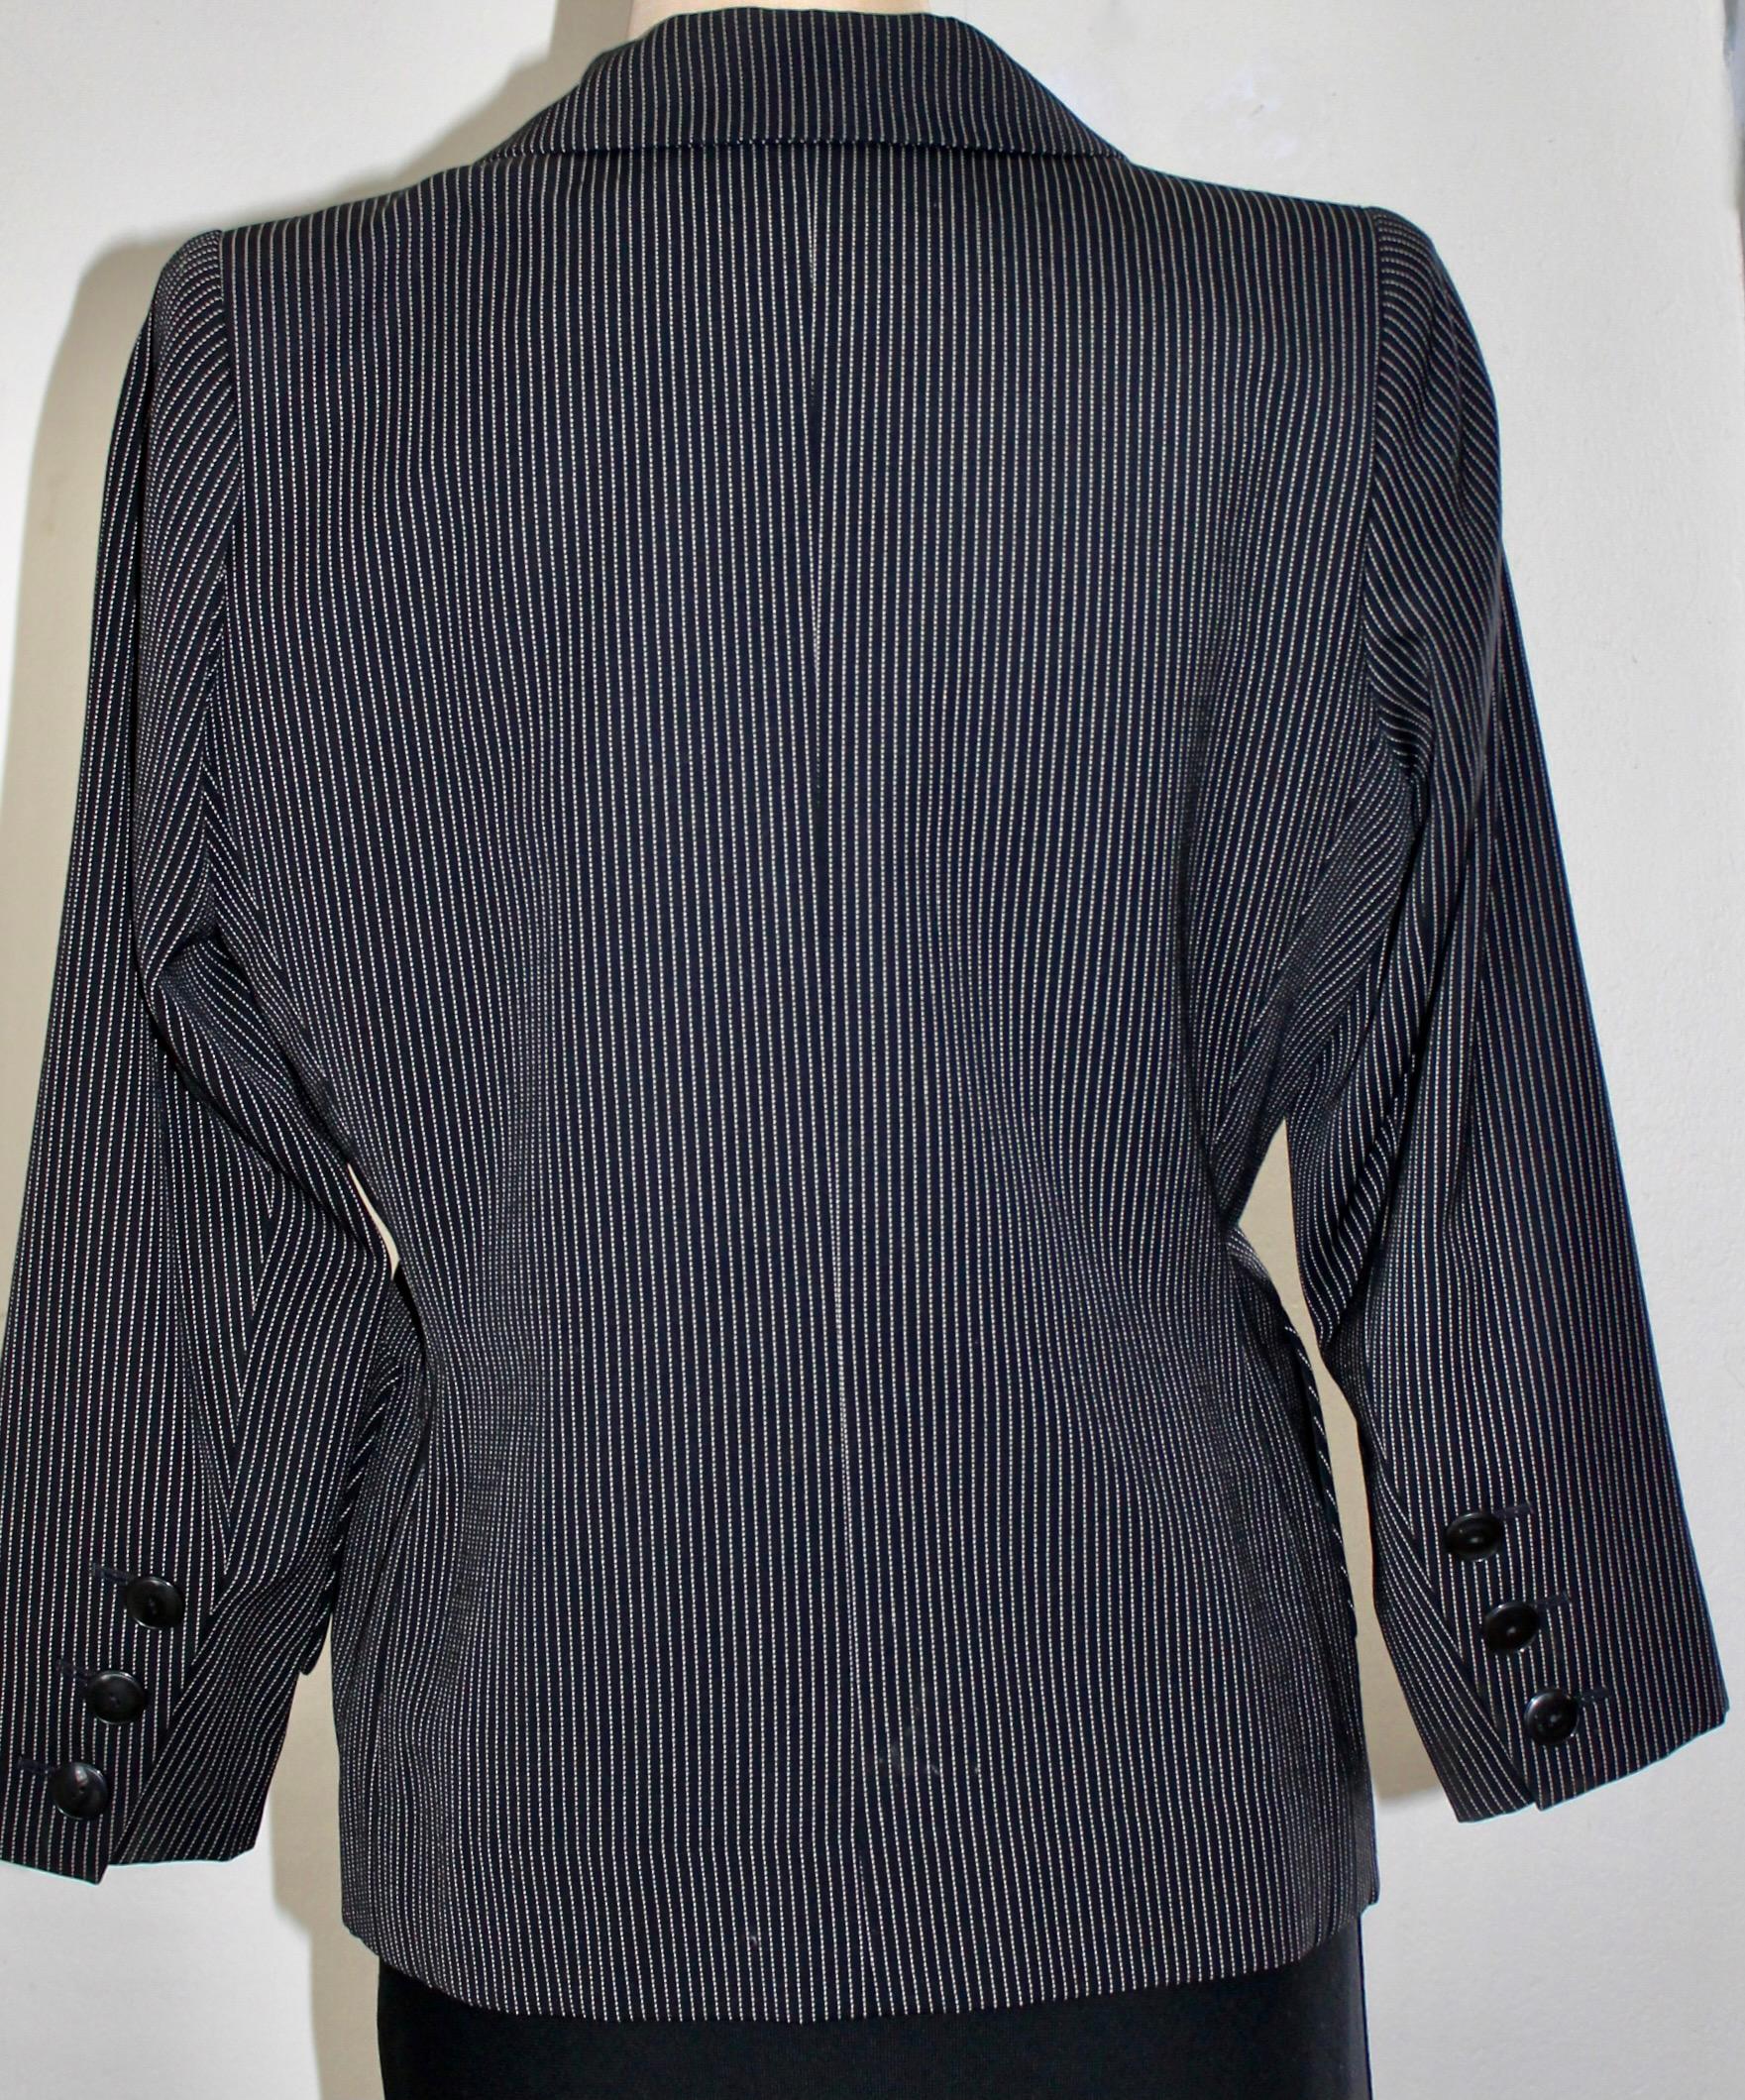 Yves Saint Laurent Rive Gauche Pin Strip Pants Suit 1980's For Sale 2